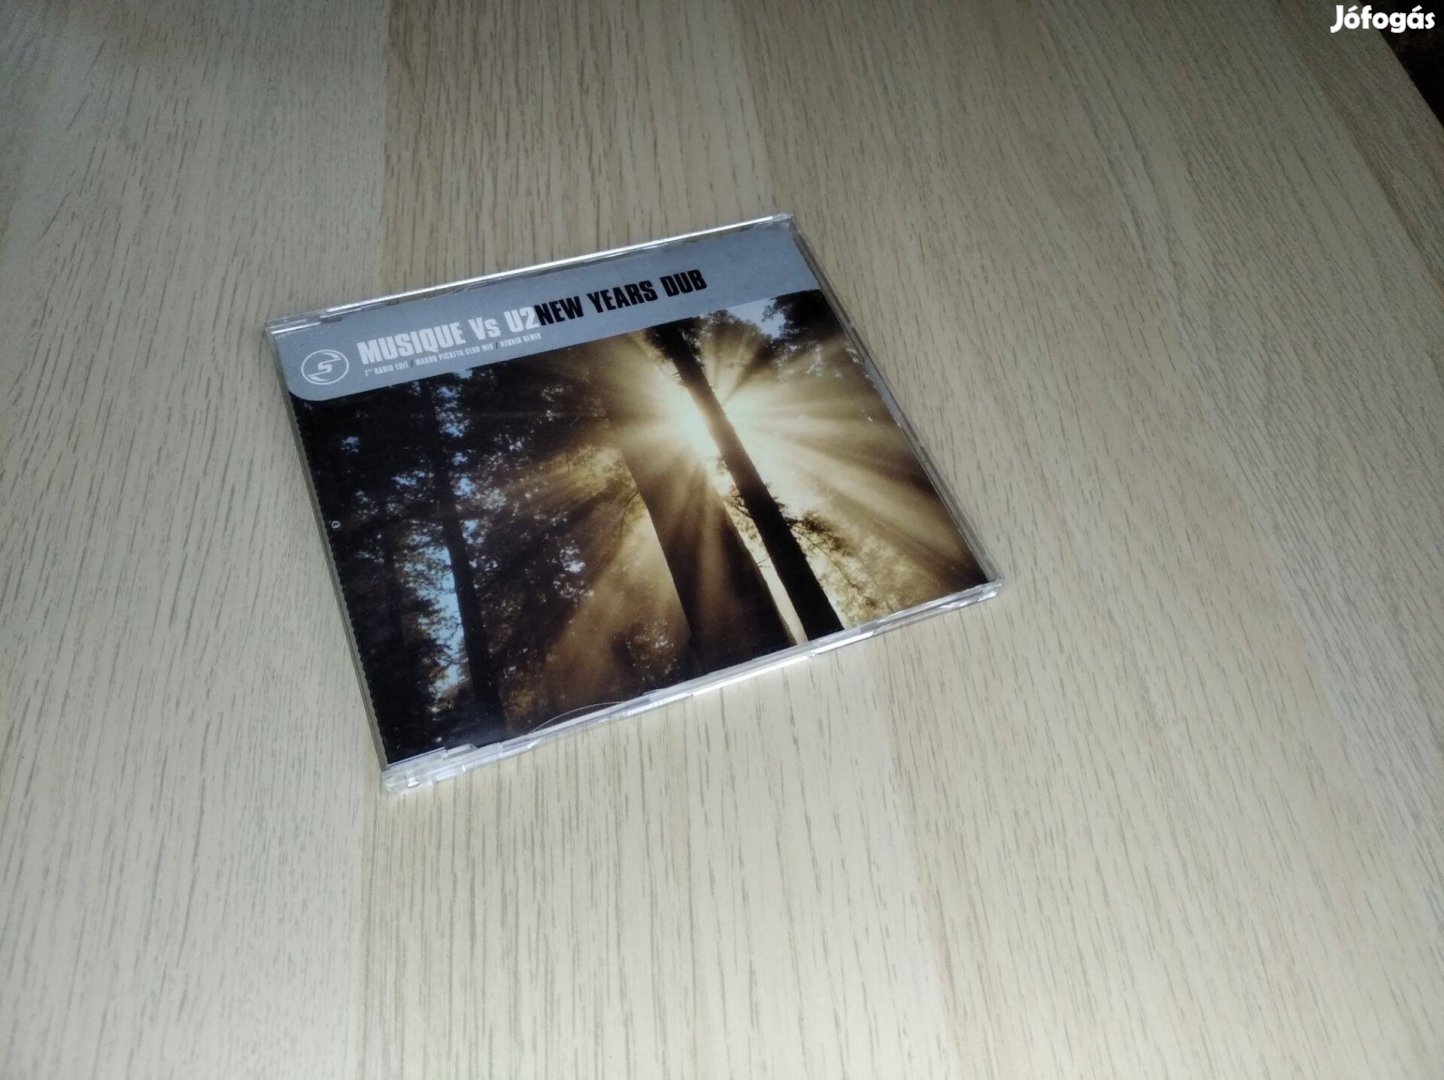 Musique vs. U2 - New Years Dub / Maxi CD - Domoszló